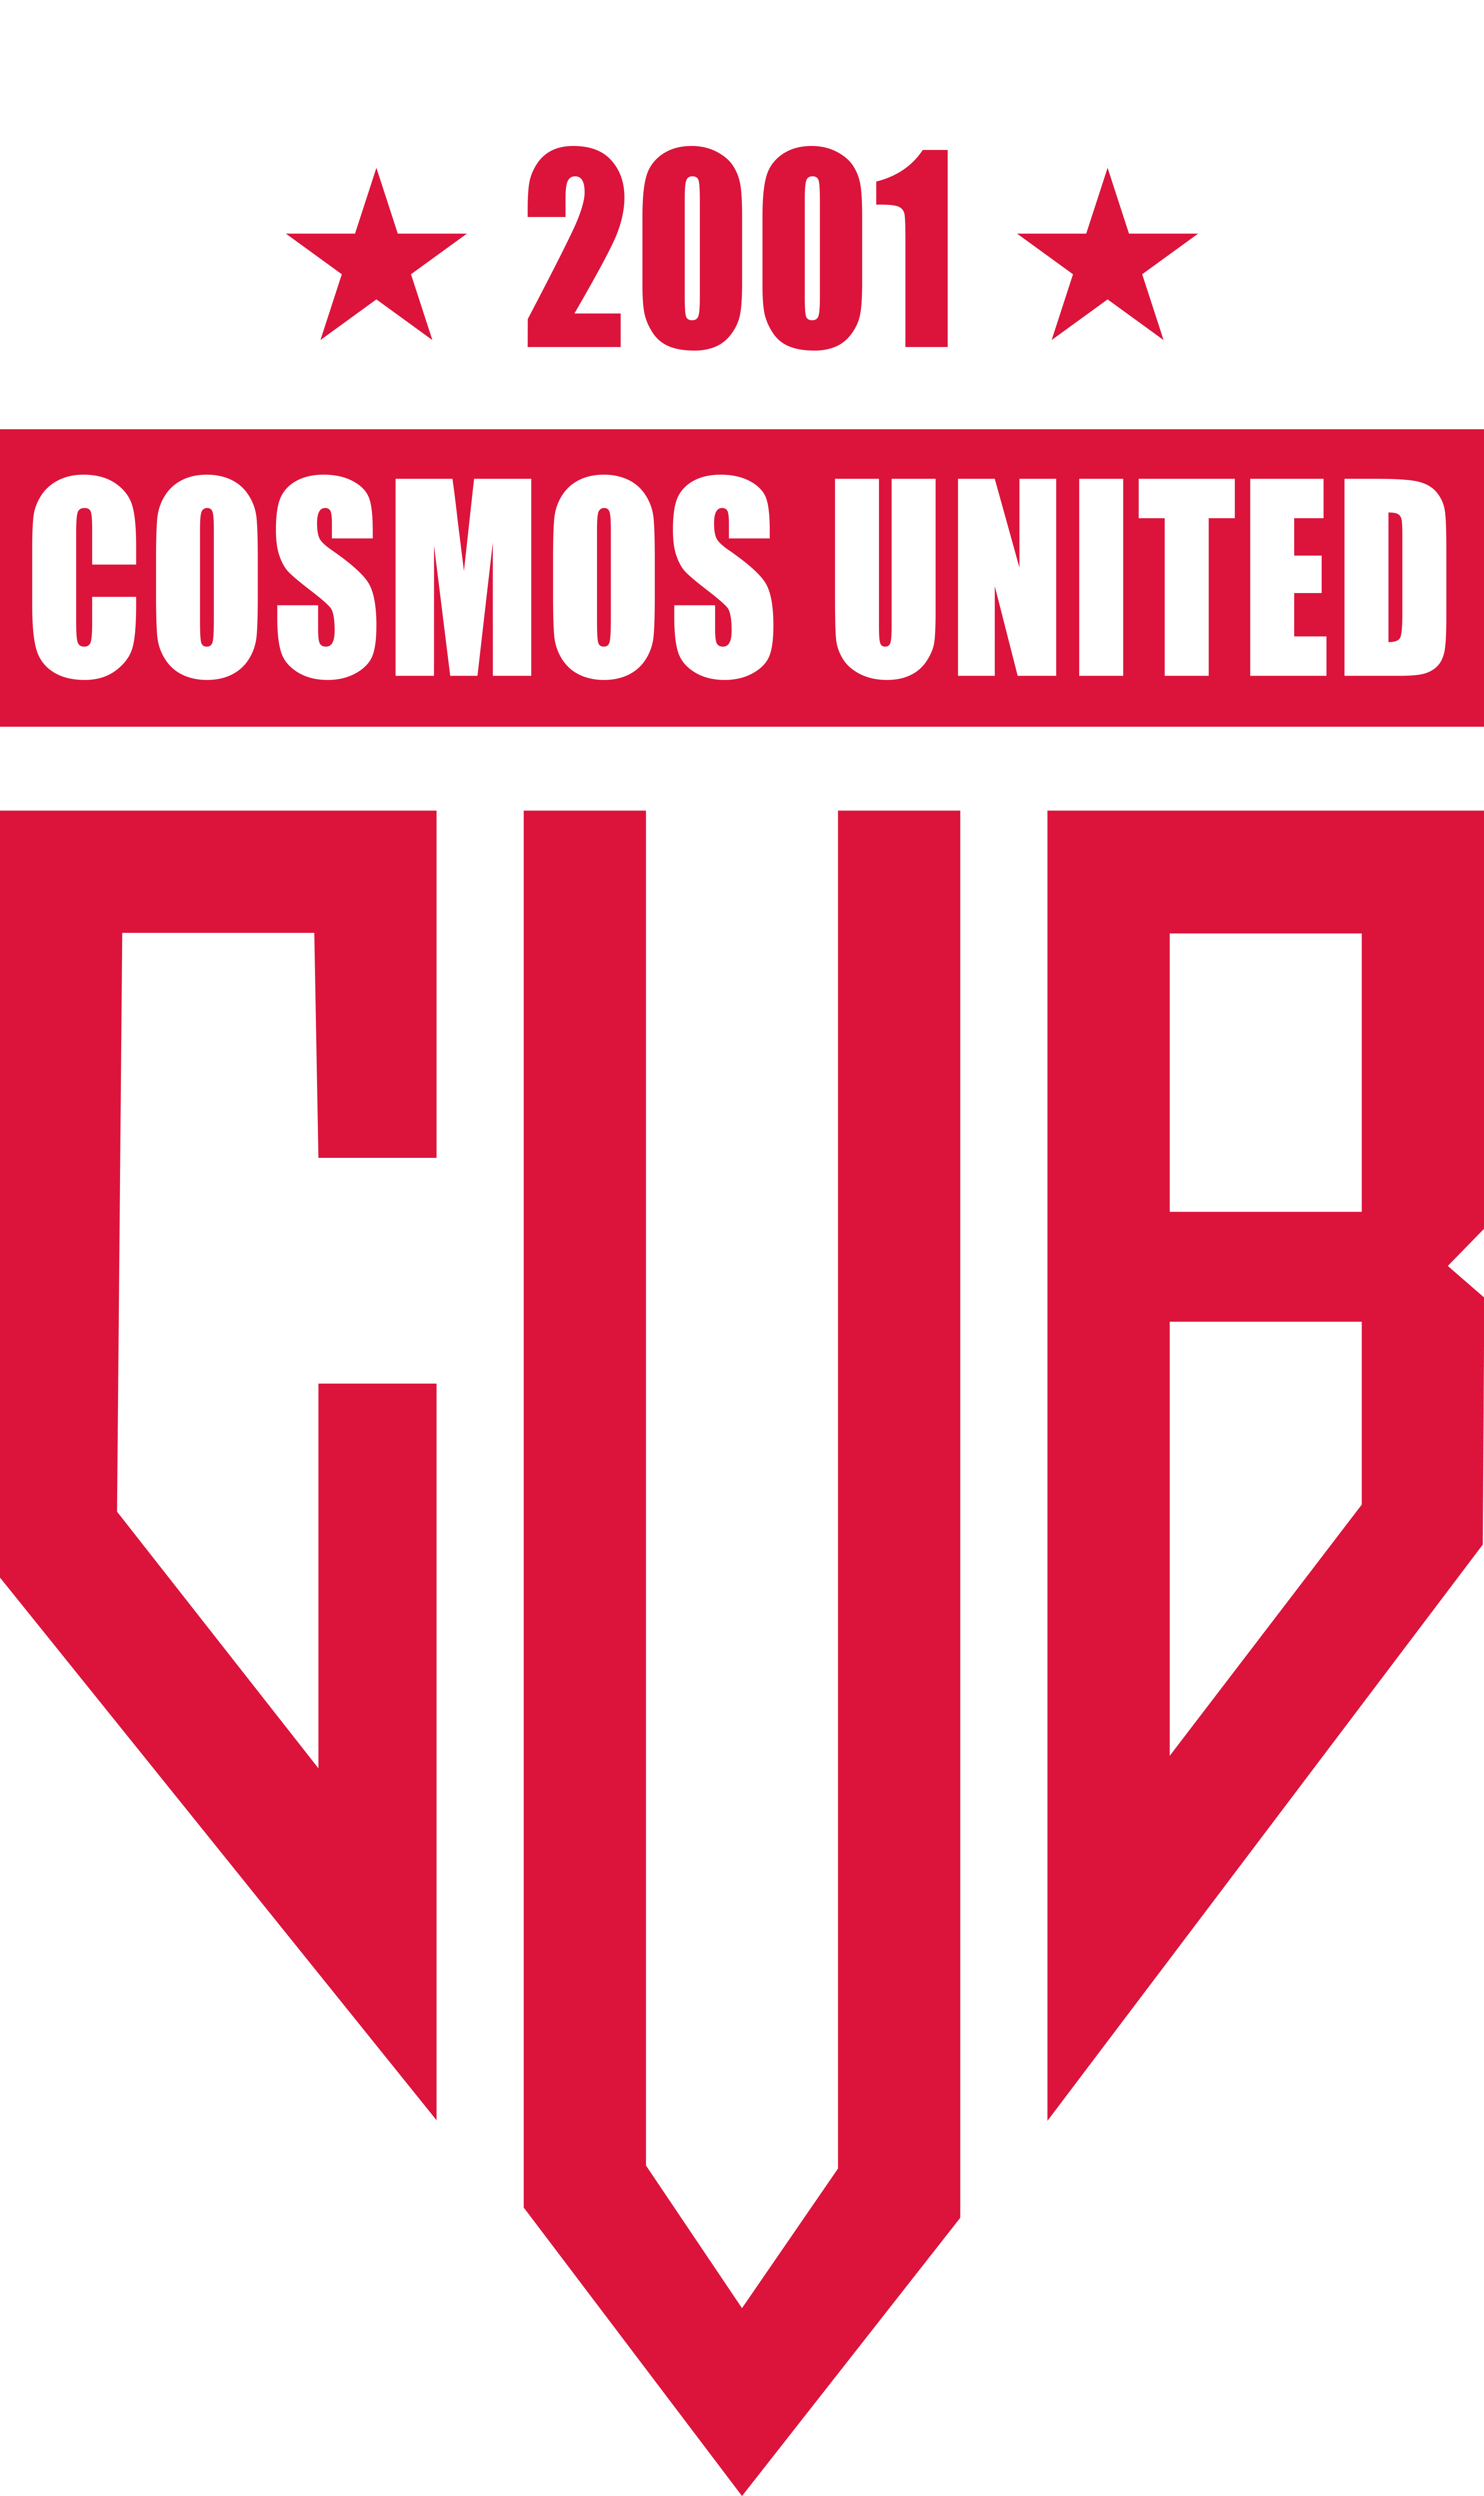 Cosmos United Berlin